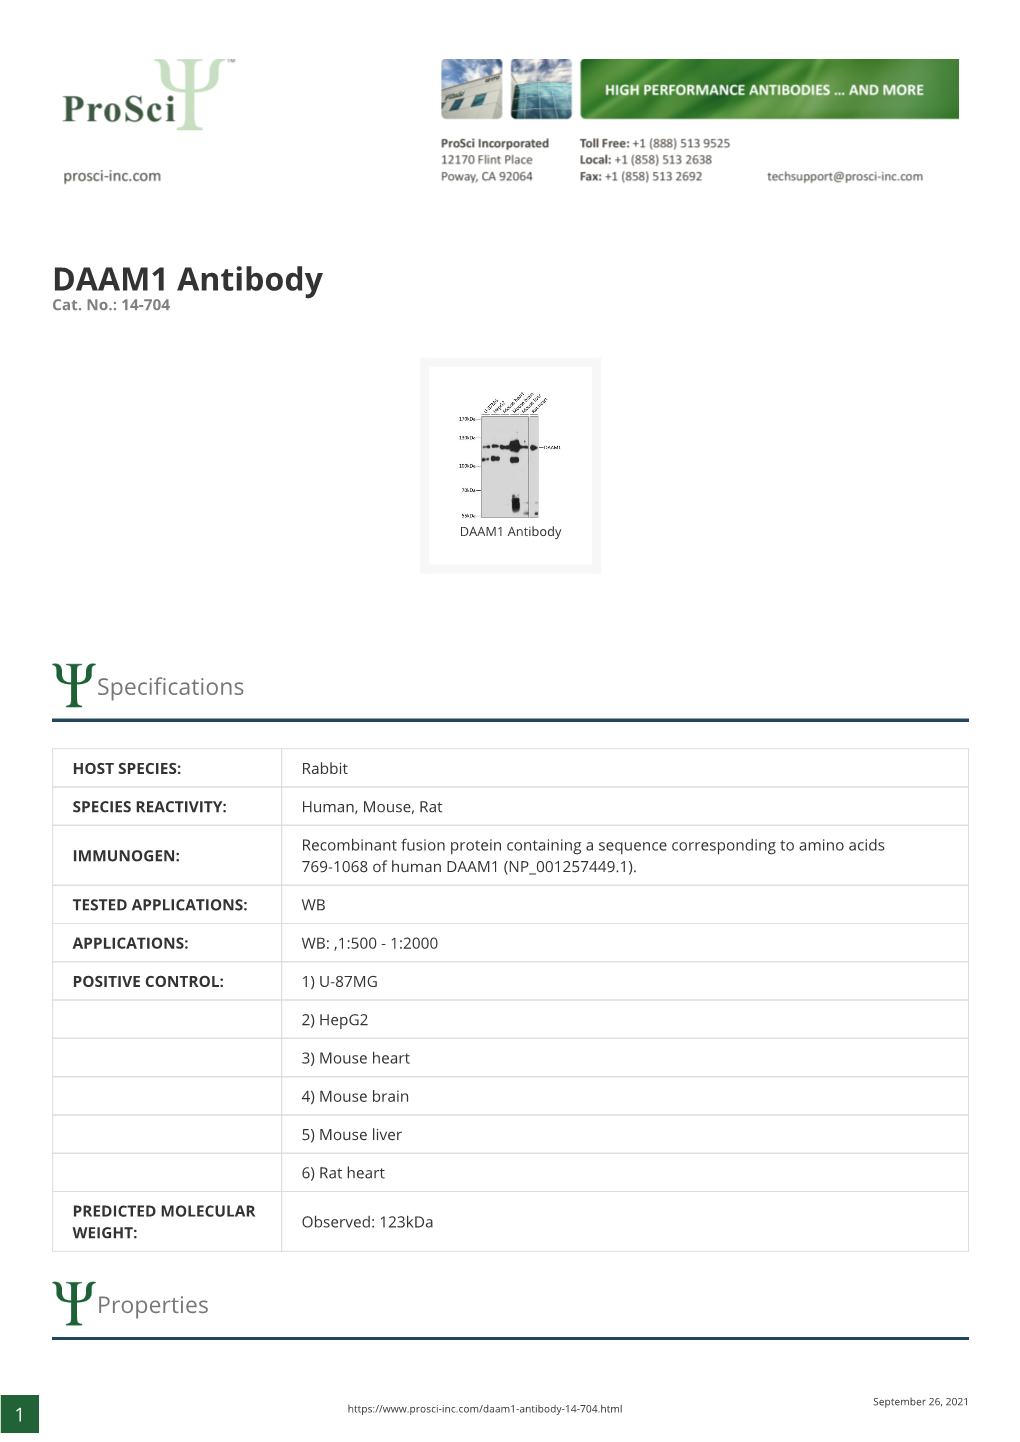 DAAM1 Antibody Cat